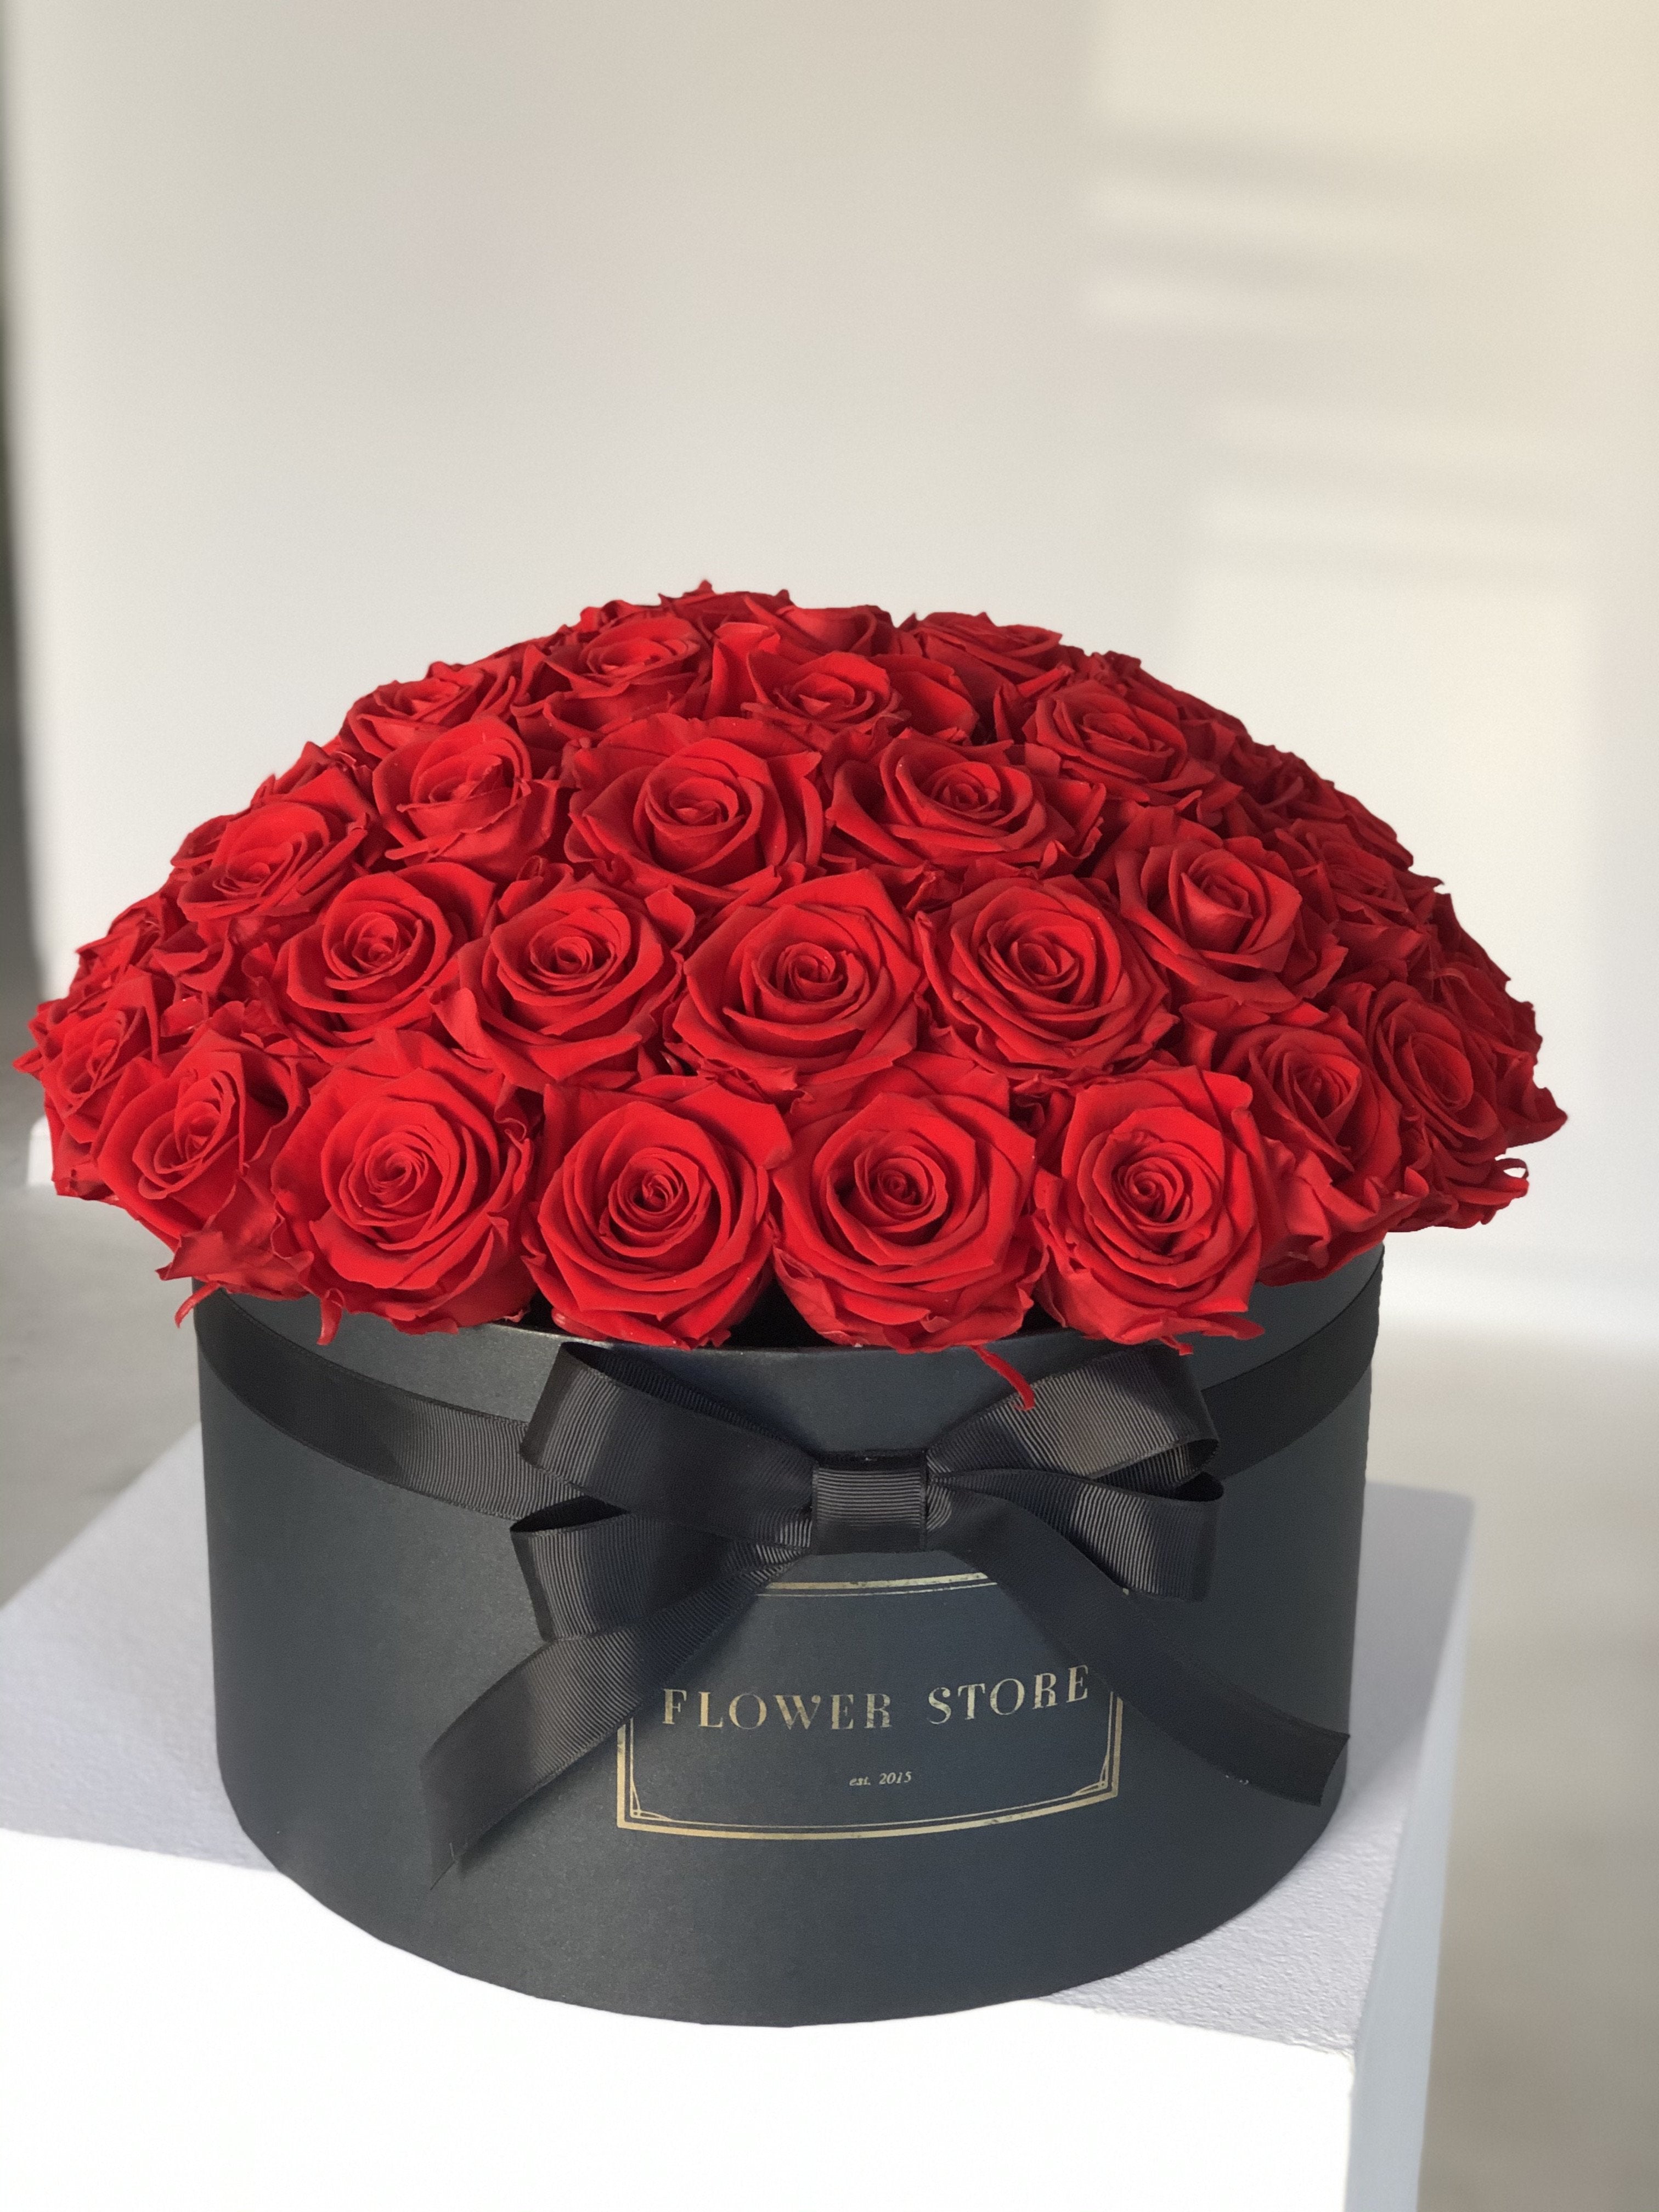 Grande flowerbox with red eternal roses